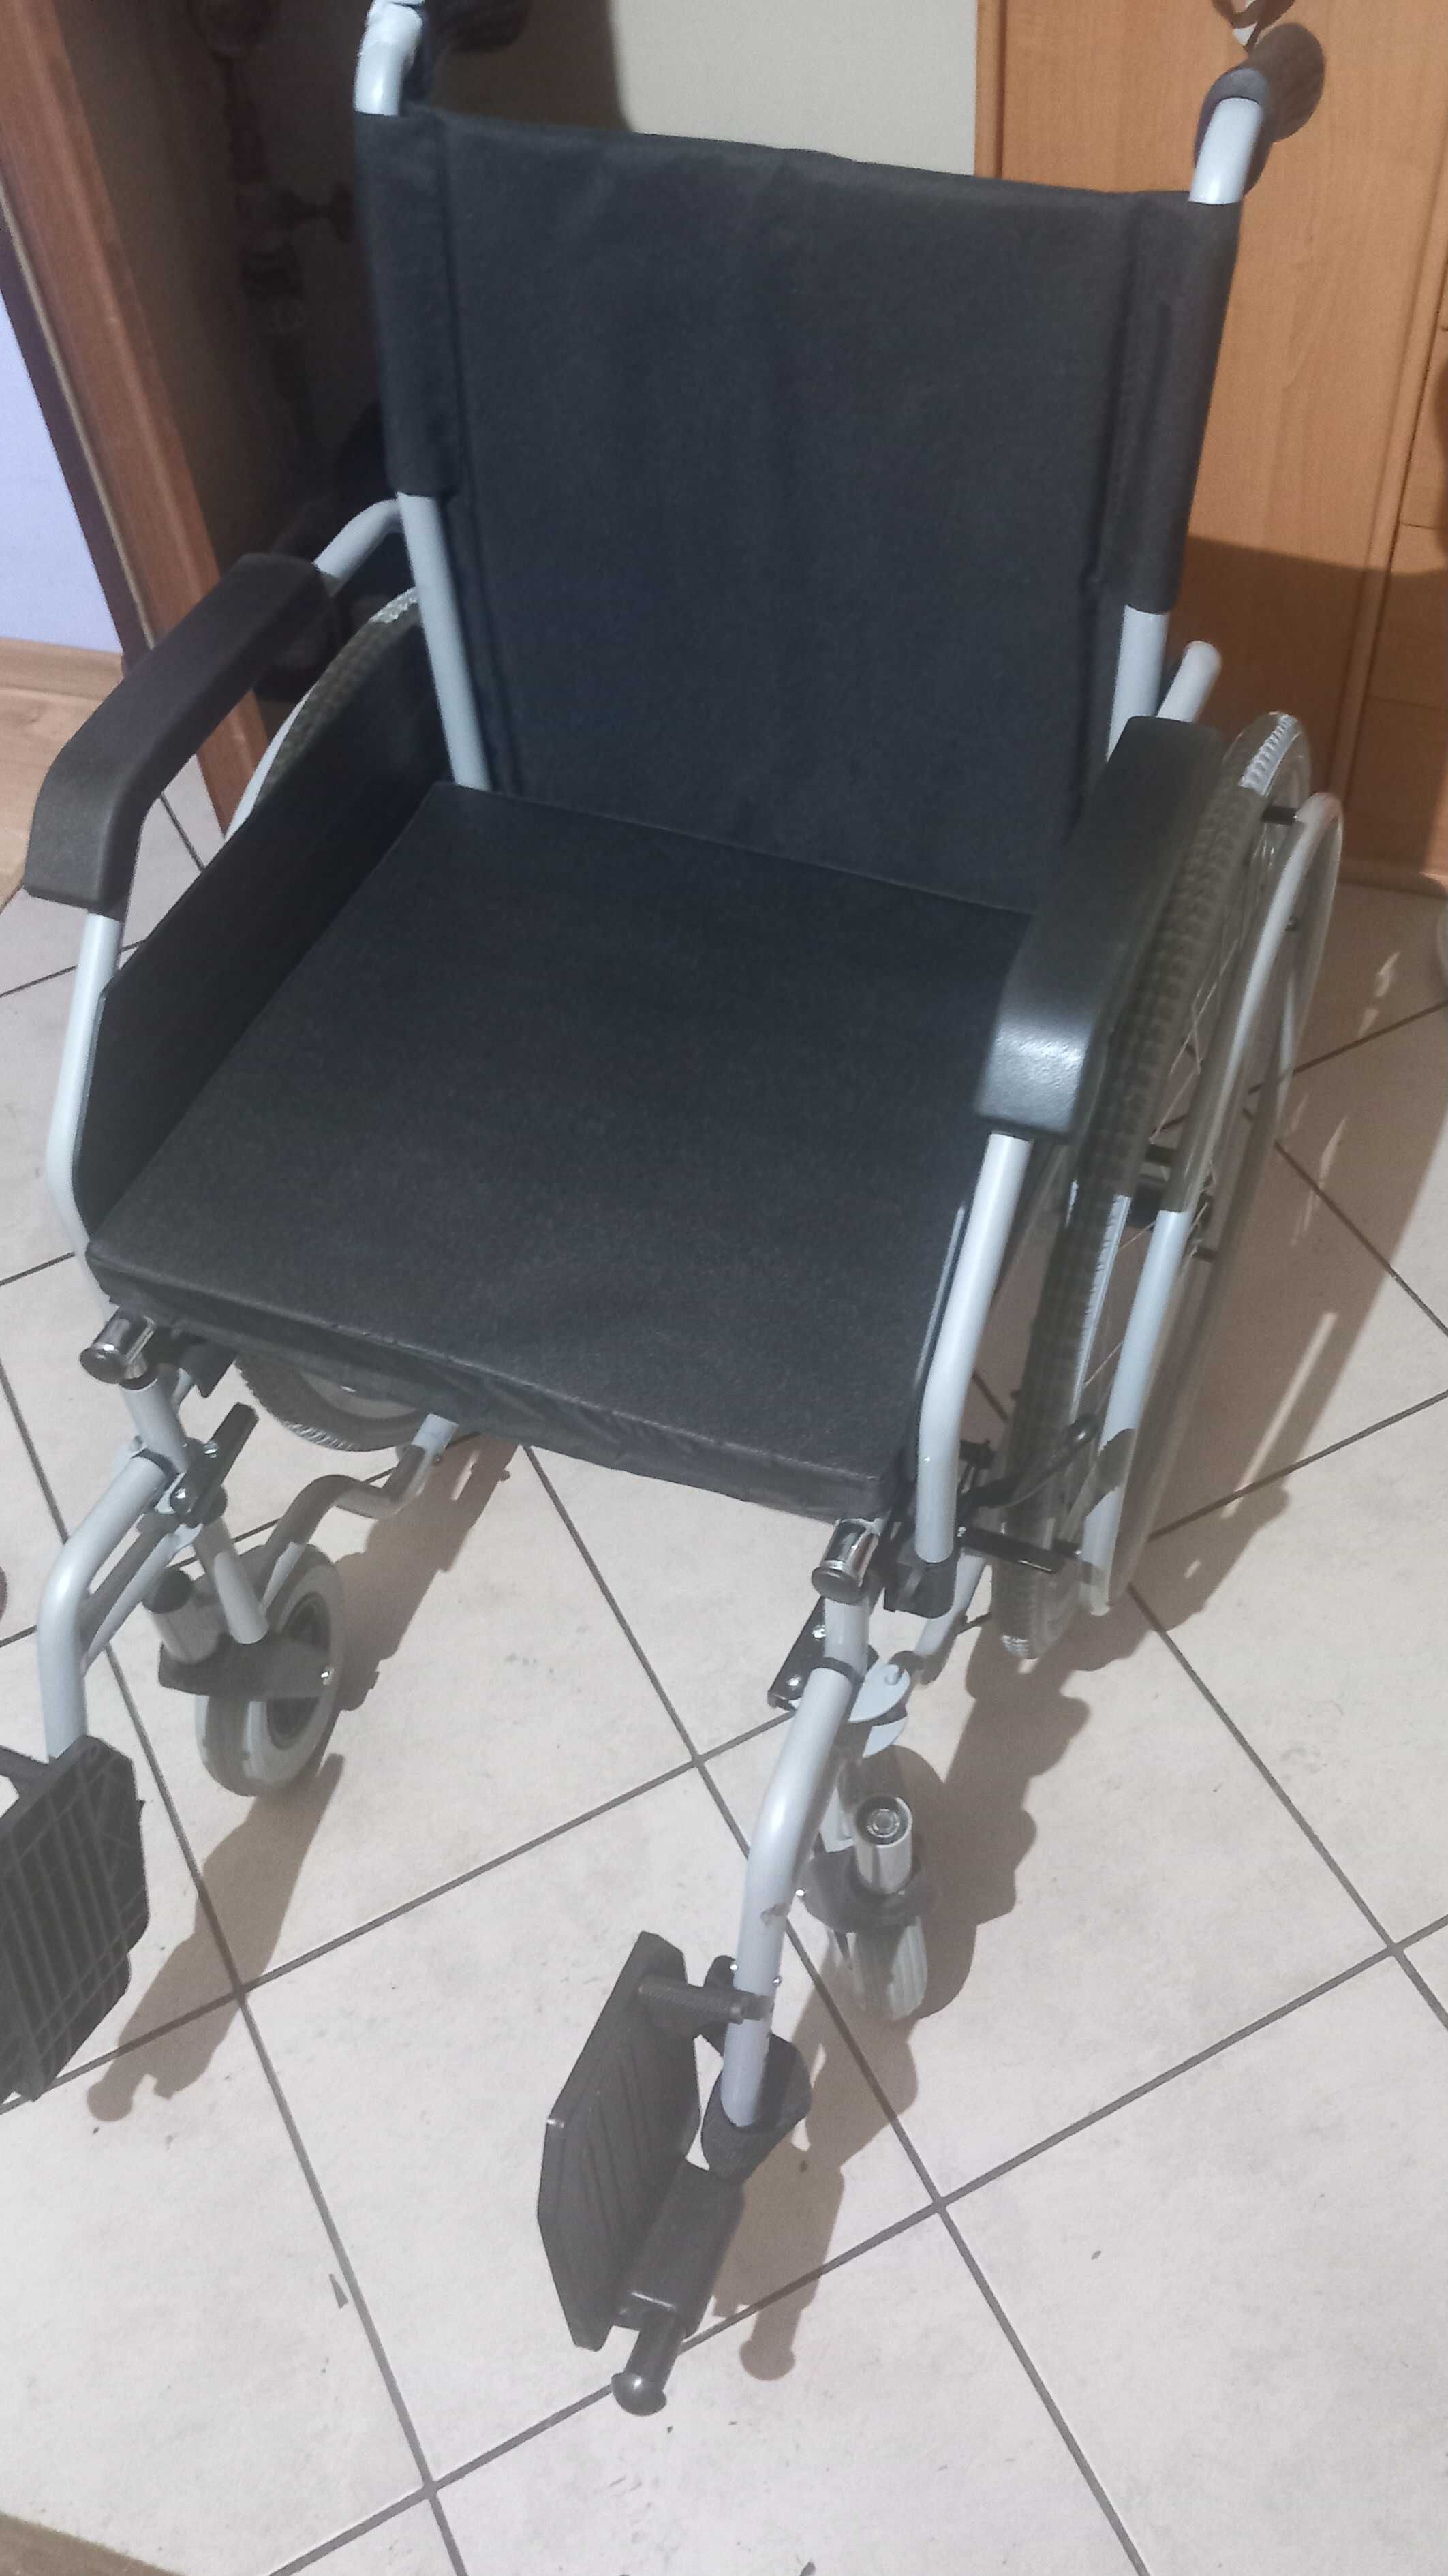 Sprzedam wózek inwalidzki AR400